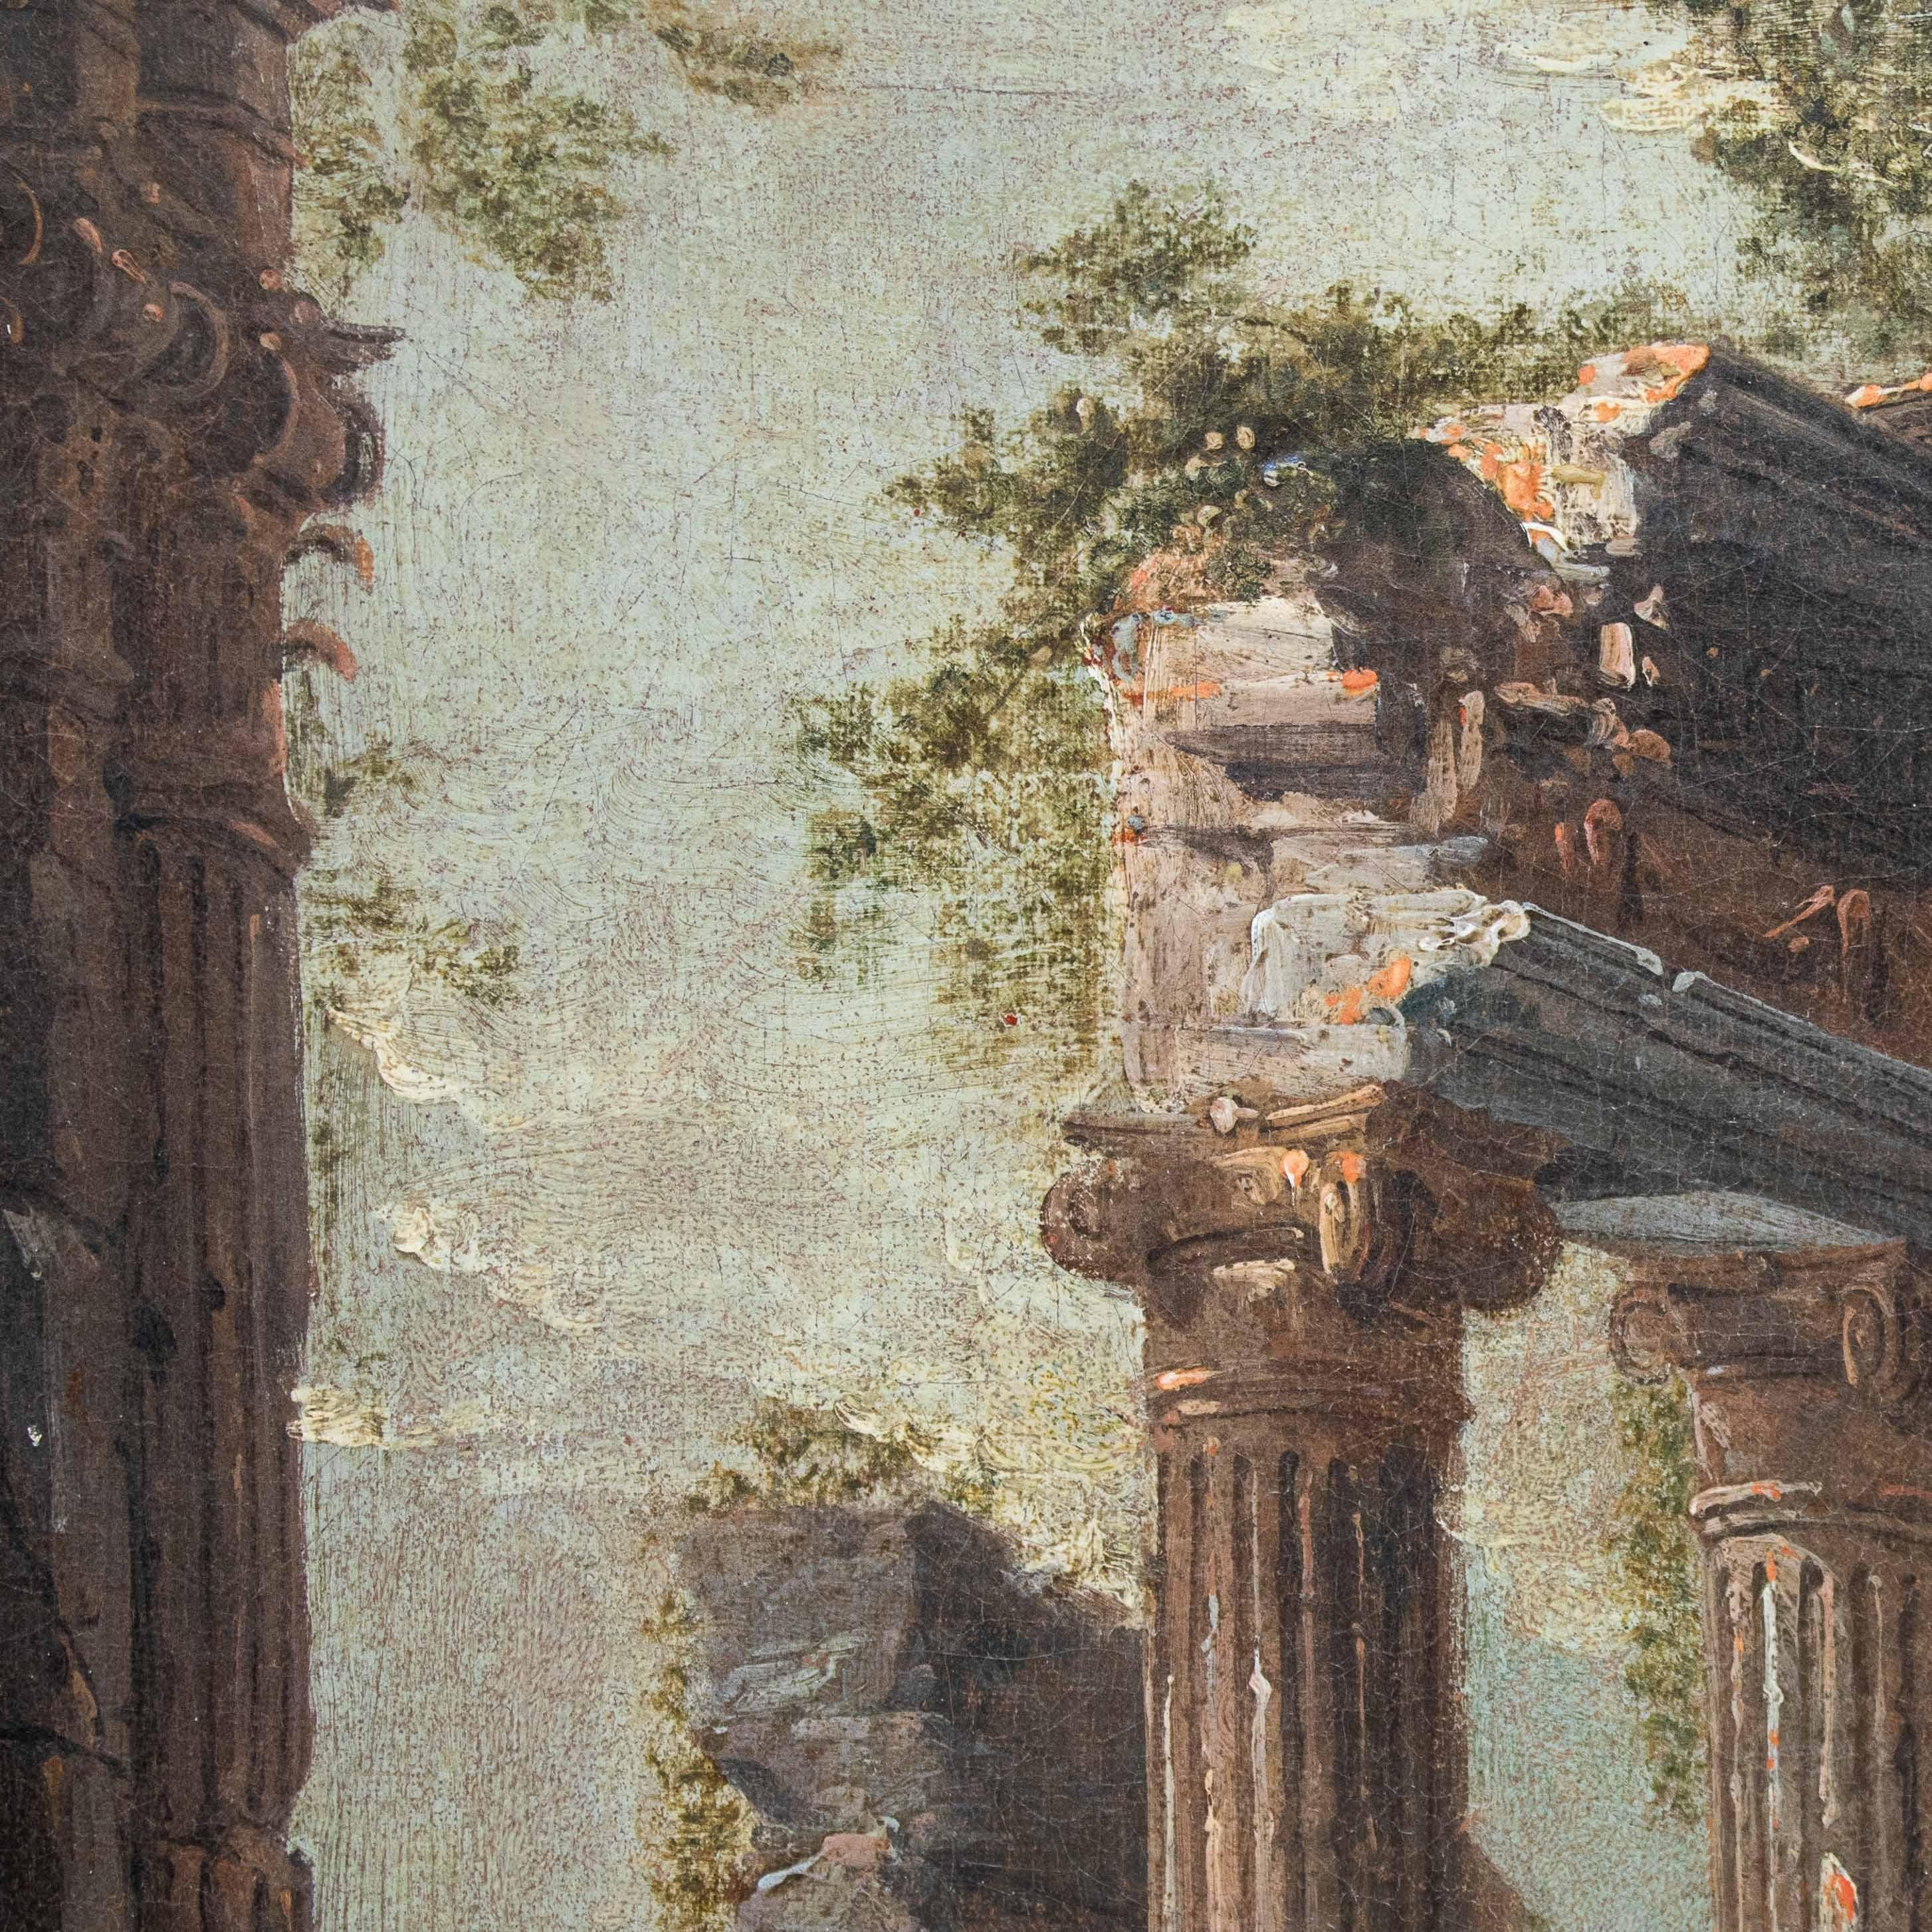 Antonio Joli 'Ca 1700-1777' Architectural Capriccio Painting Oil on ...